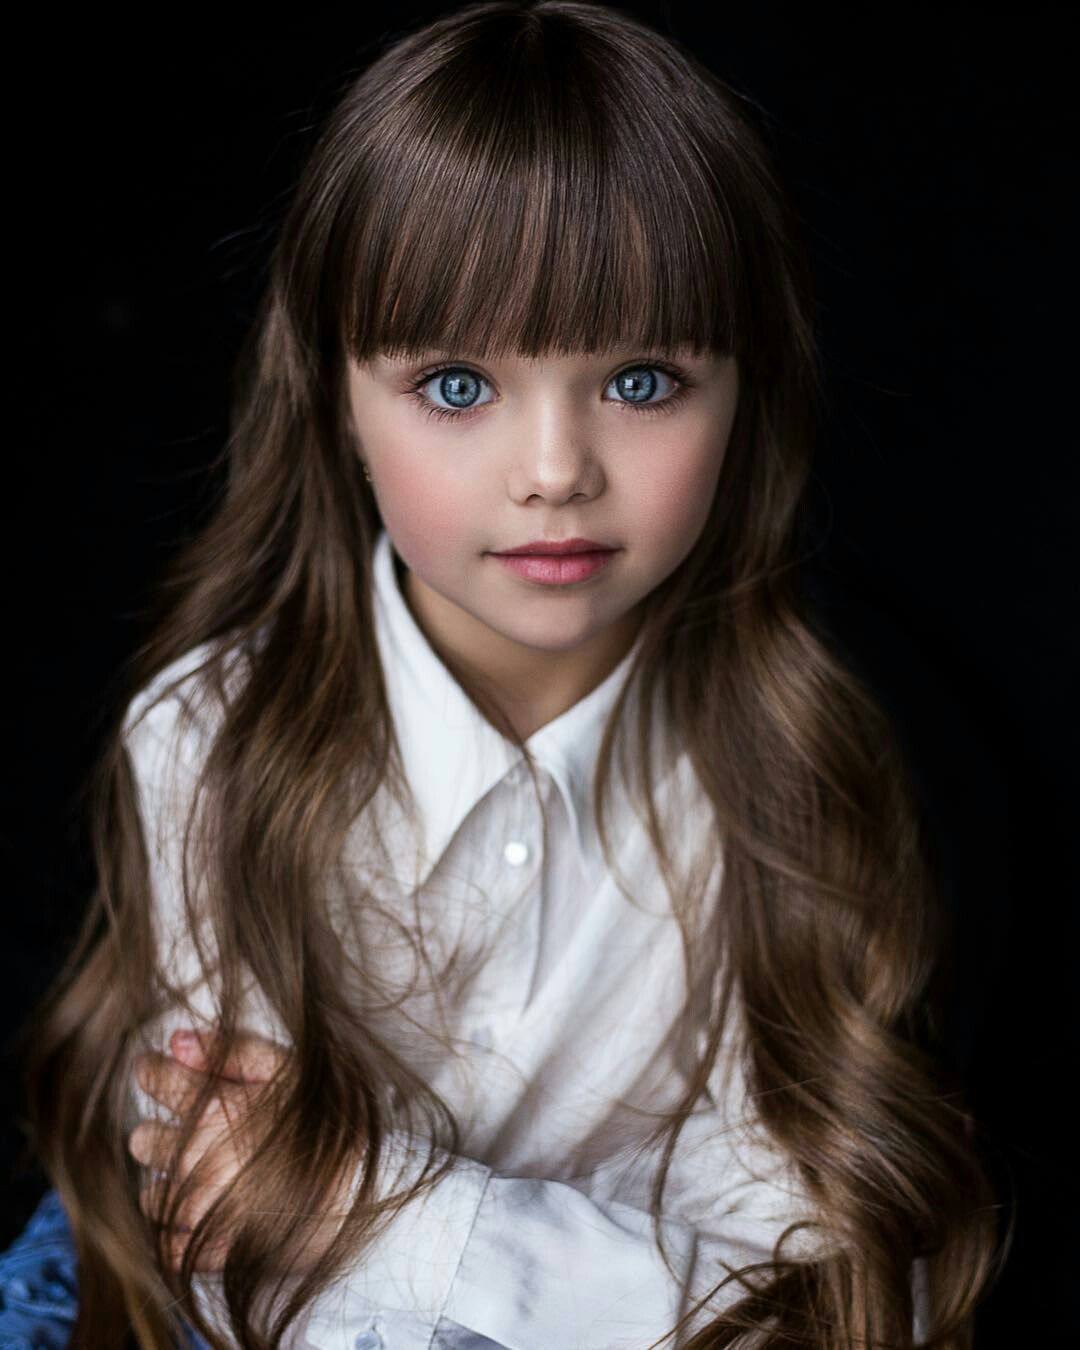 全世界最美小孩!6岁「俄罗斯儿童界超模」蓝色大眼睛